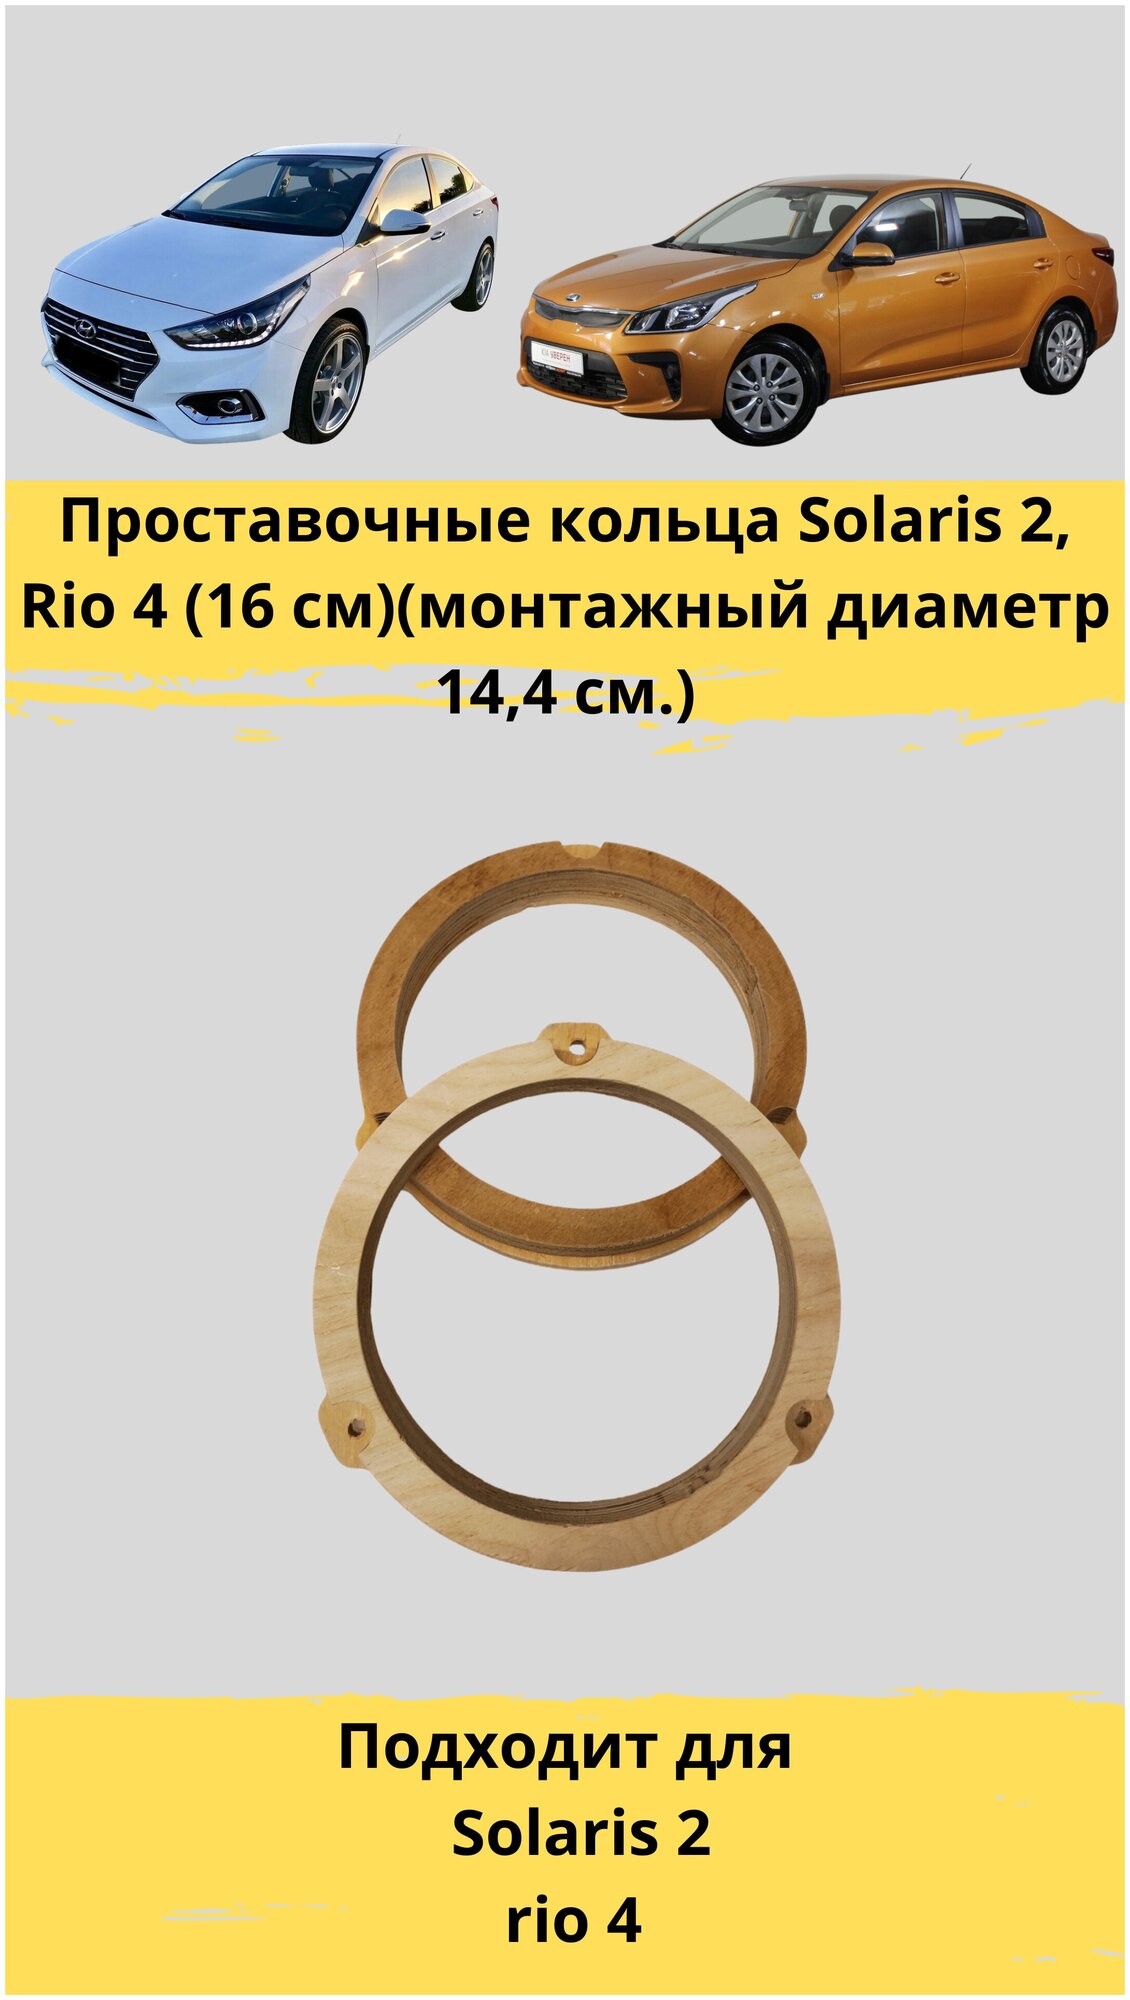 Проставочные кольца под установку динамиков Hyundai Solaris Rio 4 (16 см)(монтажный диаметр 144 см.)